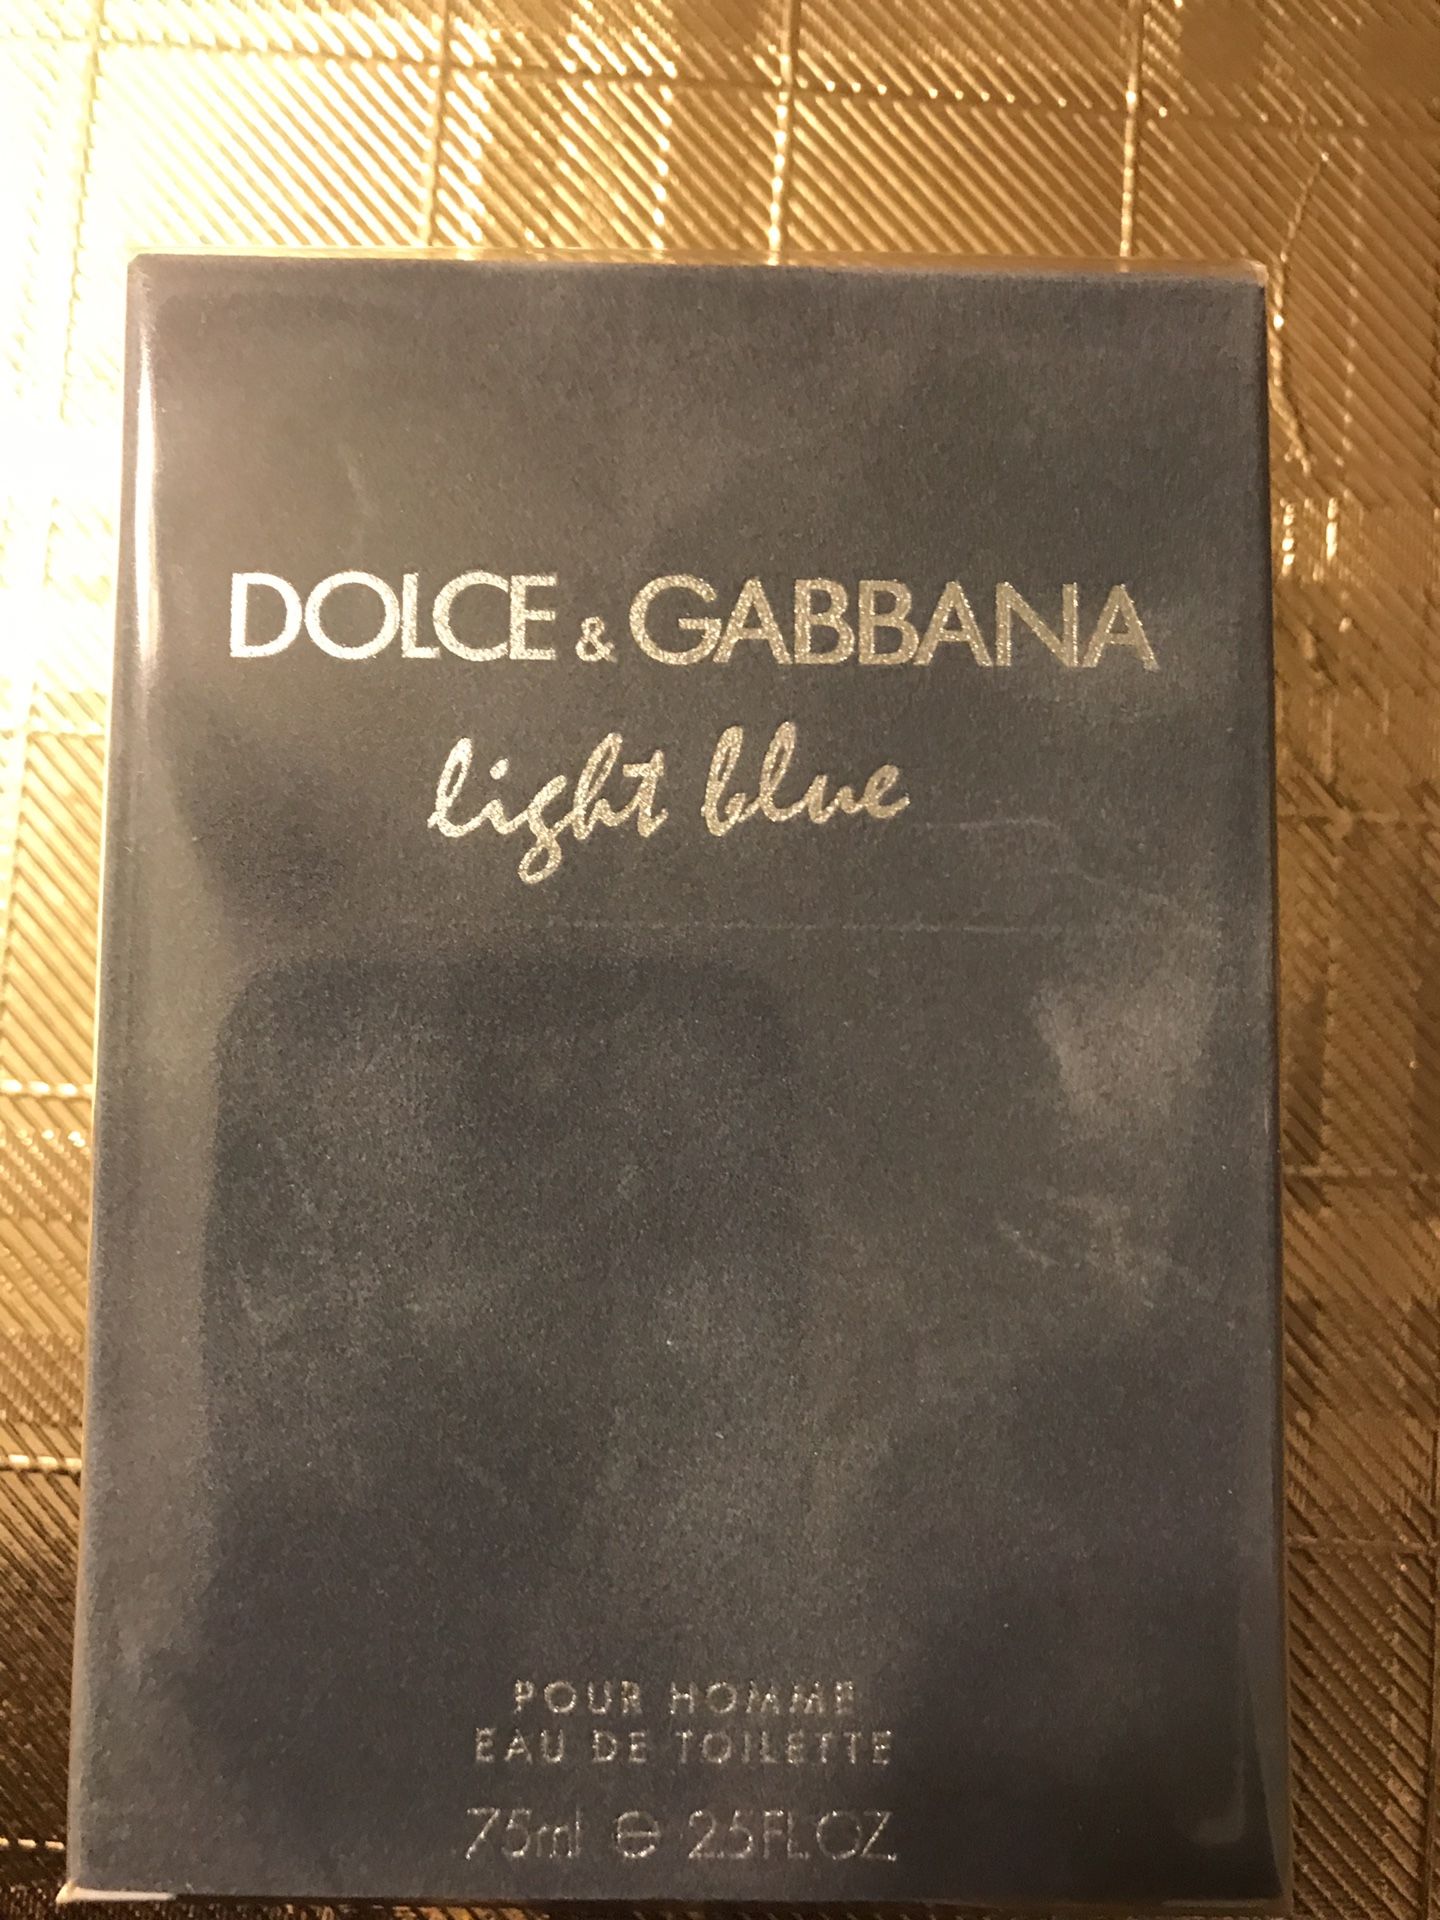 DOLCE & GABBANA LIGHT BLUE , POUR DE HOMME EAU DE TOILETTE